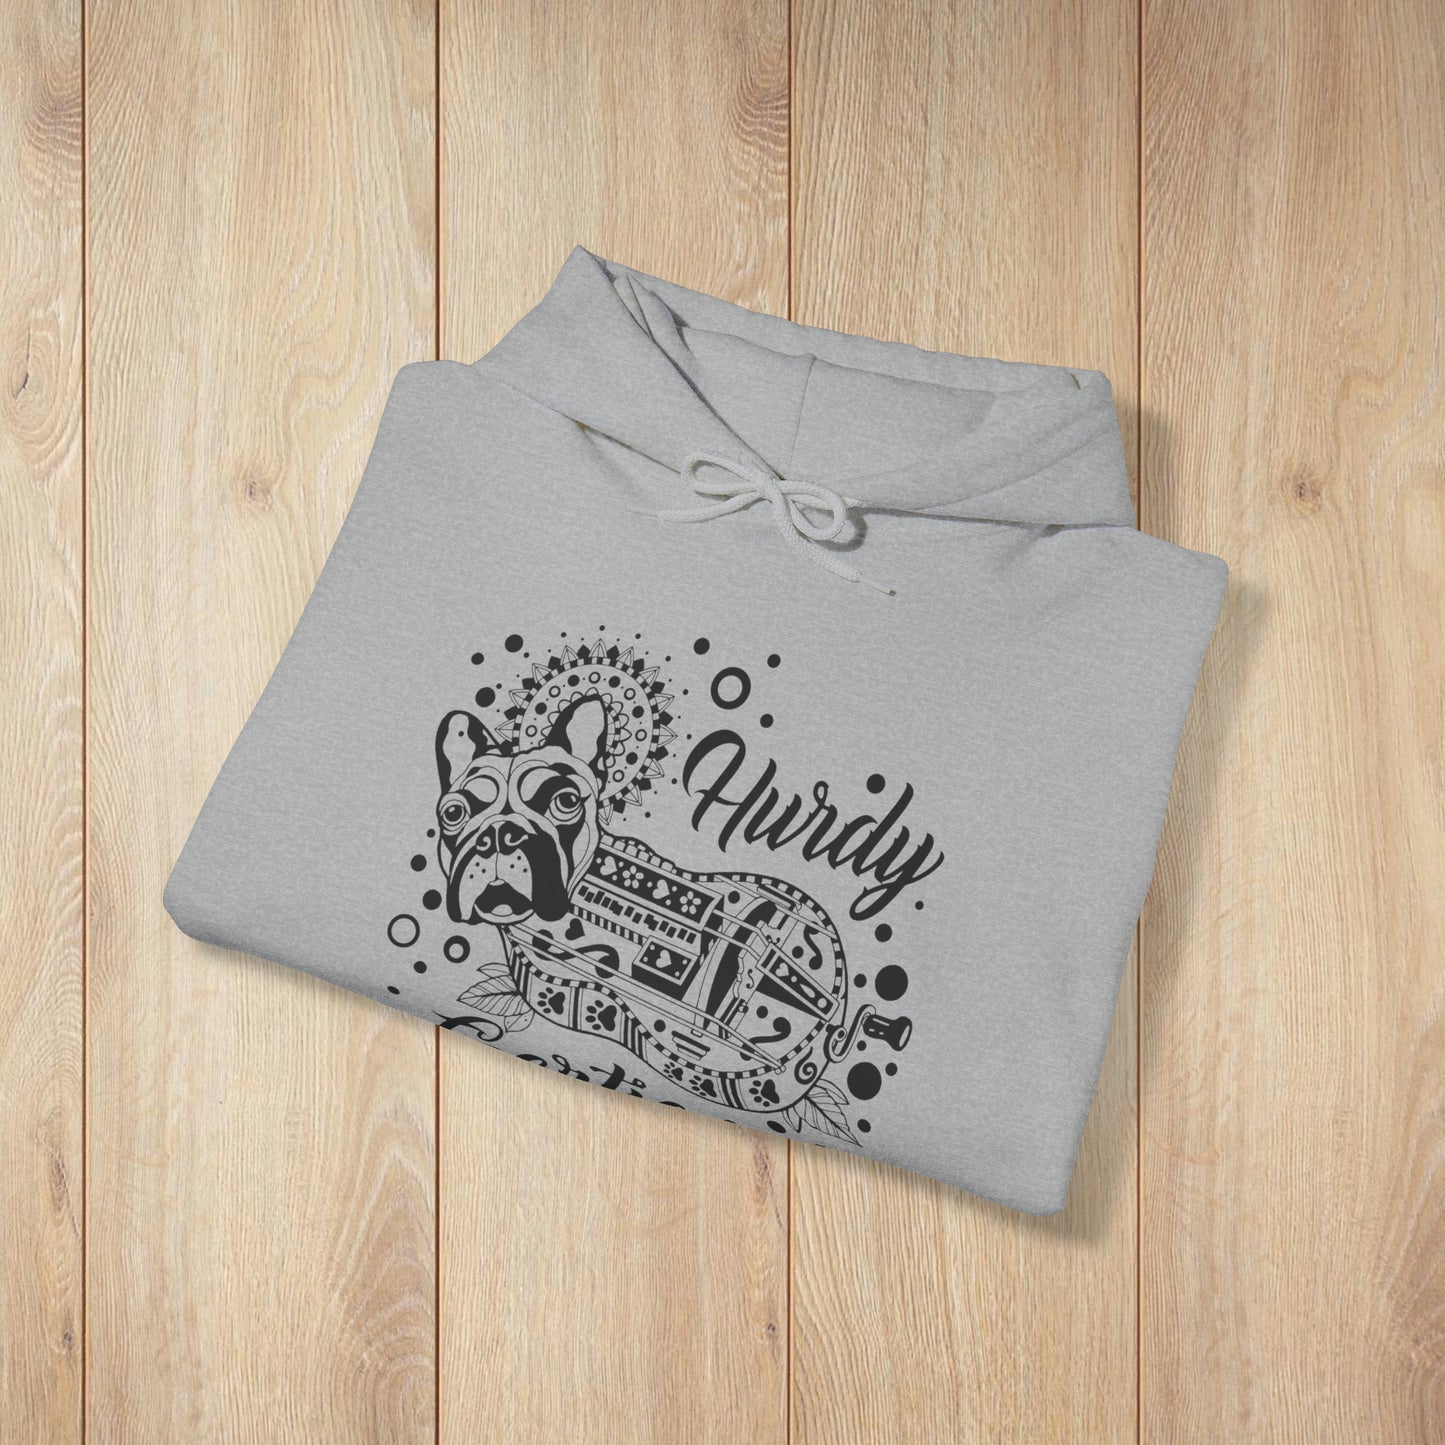 Hurdy Gertie Hooded Sweatshirt, Frenchton Dog Line Art Hoodie